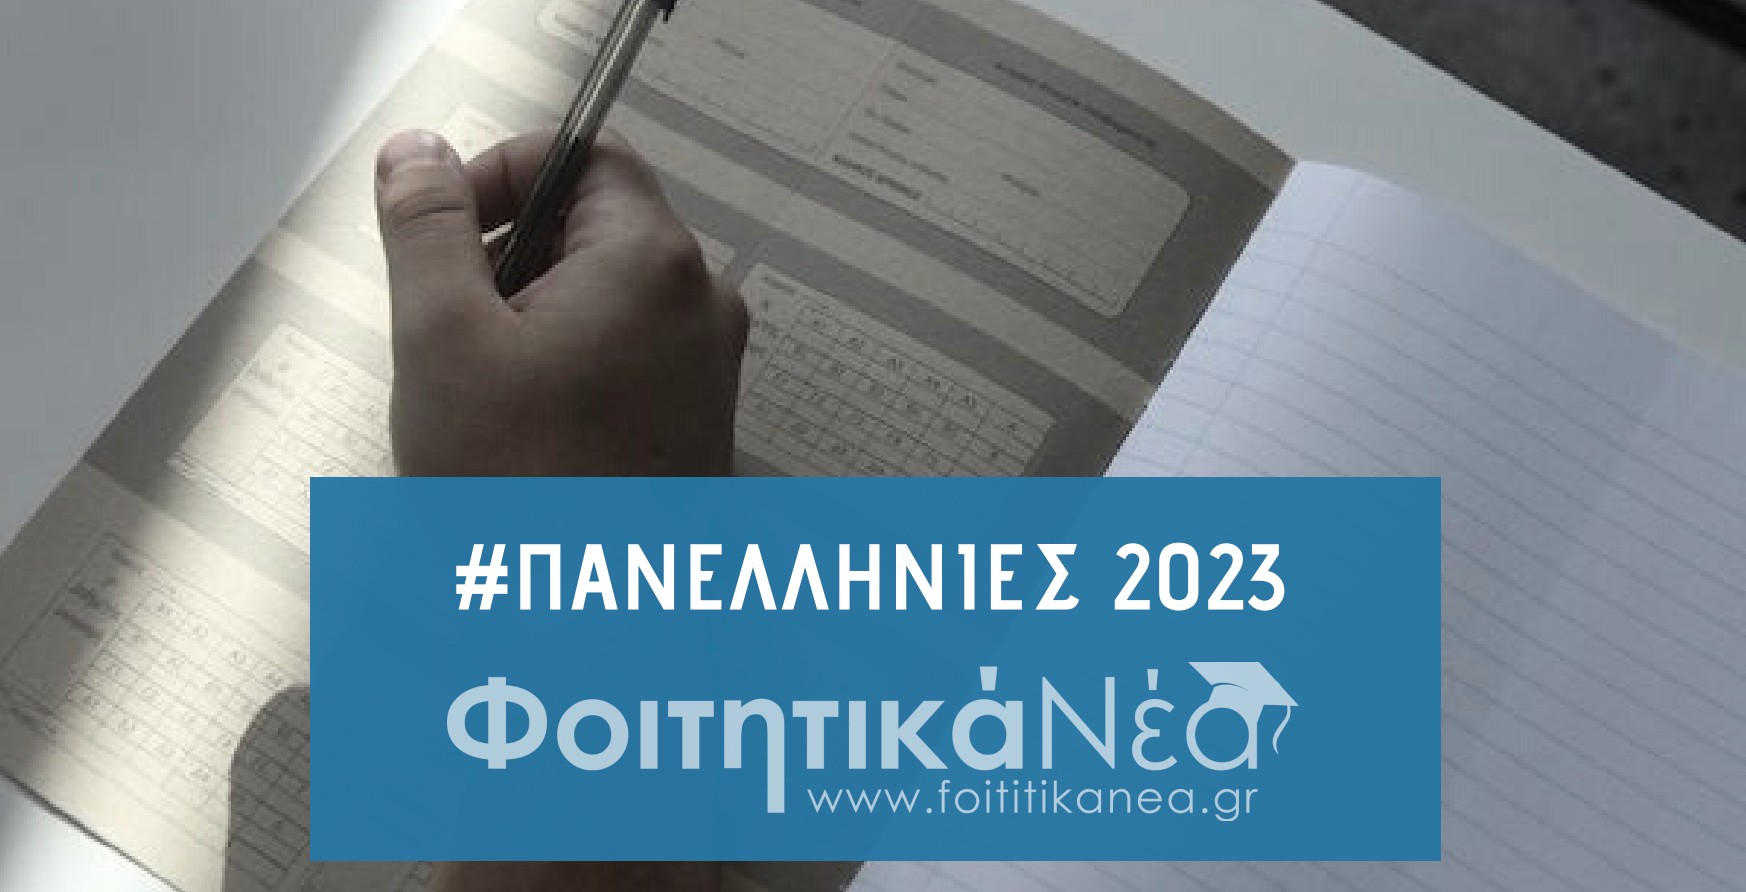  Πανελλήνιες 2023: Αίτηση-Δήλωση ΓΕΛ / Οδηγίες και Εγκύκλιος